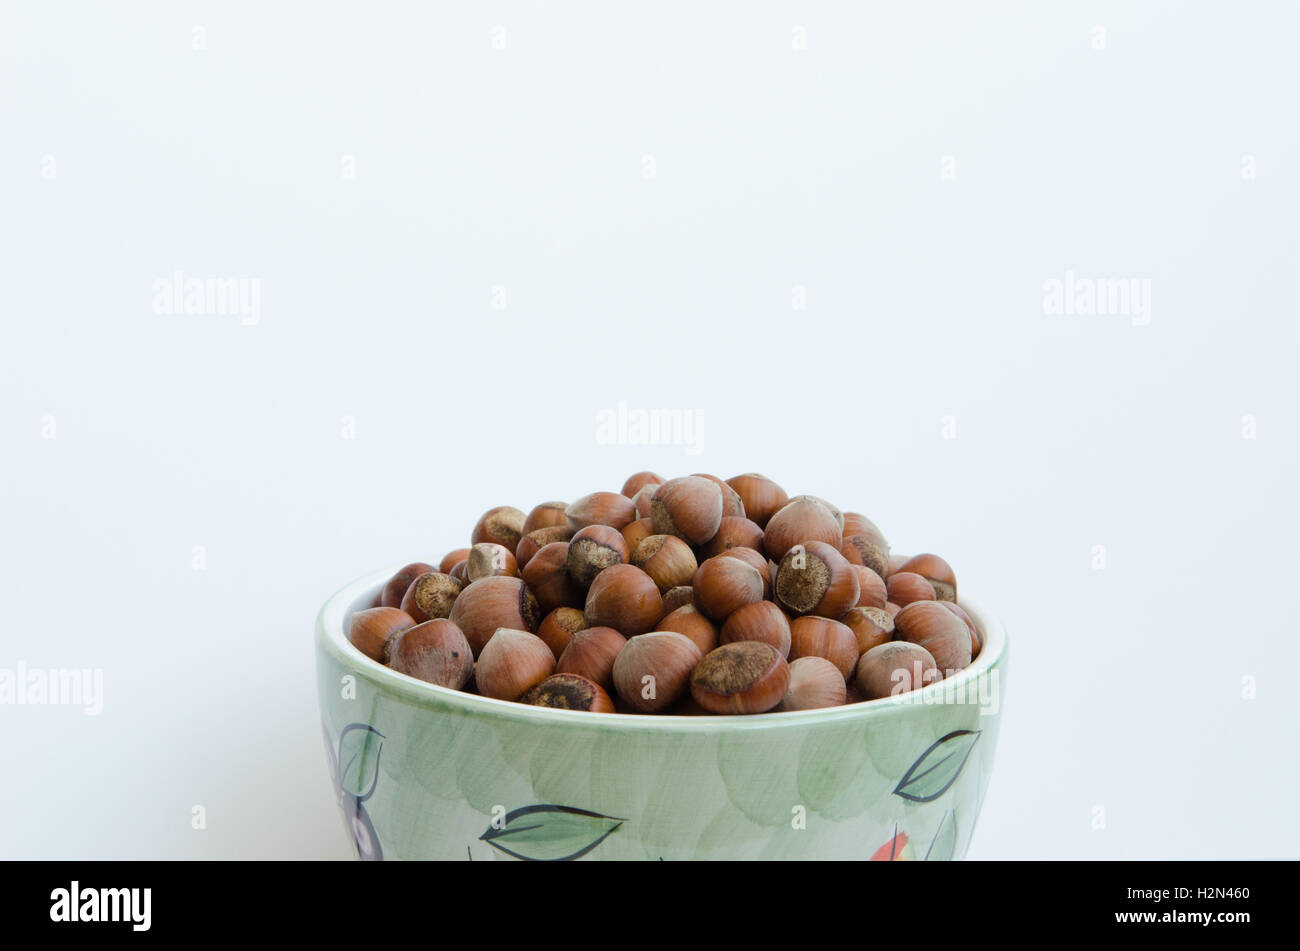 bowl of unshelled hazelnuts against white background Stock Photo